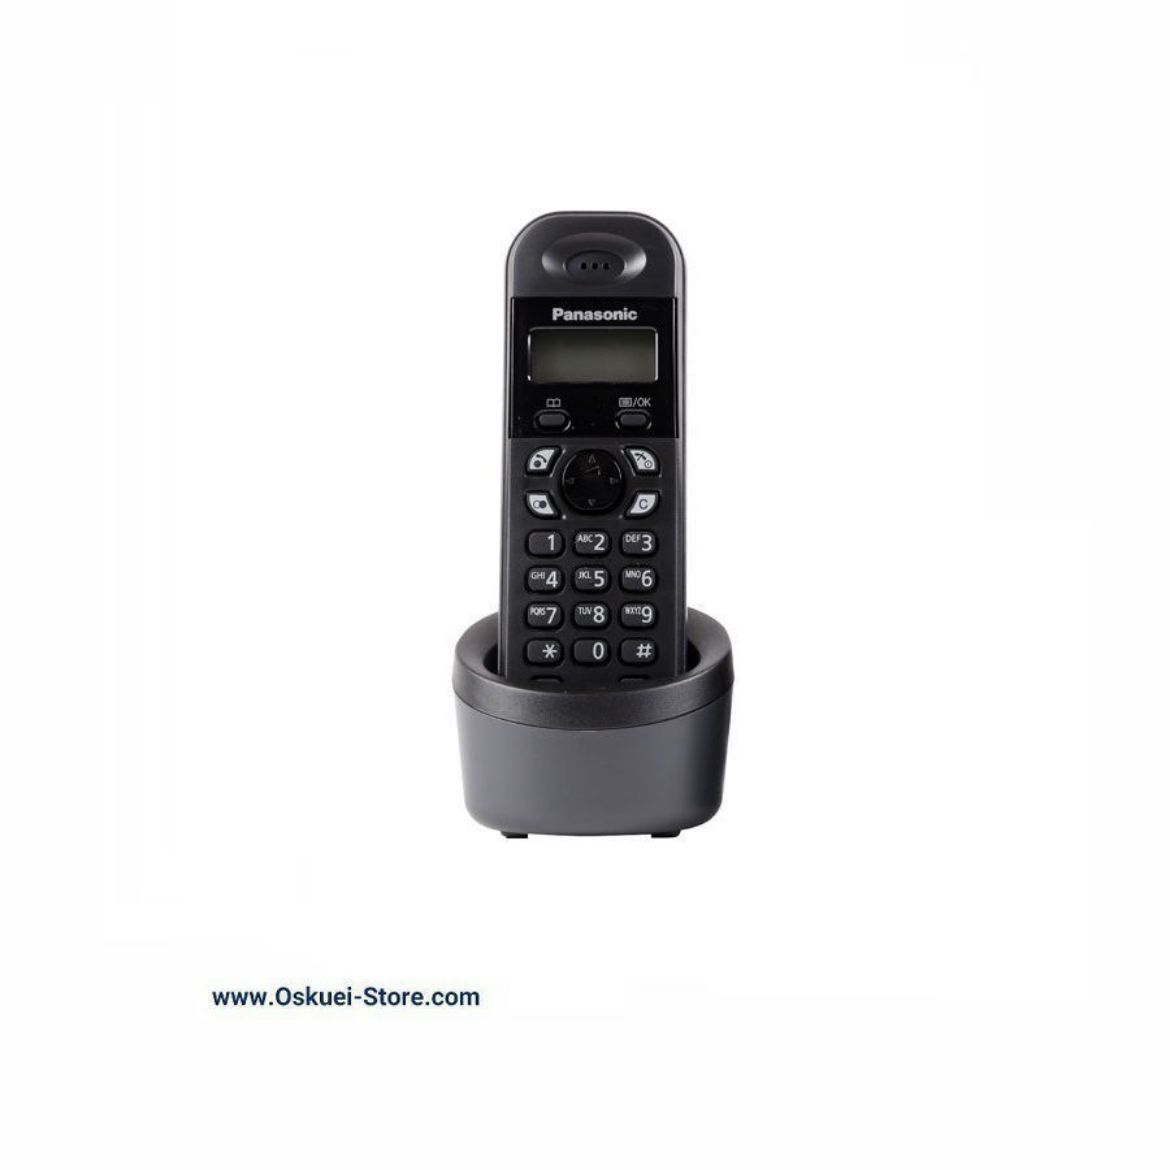 Panasonic KX-TGA131 Cordless Telephone Black